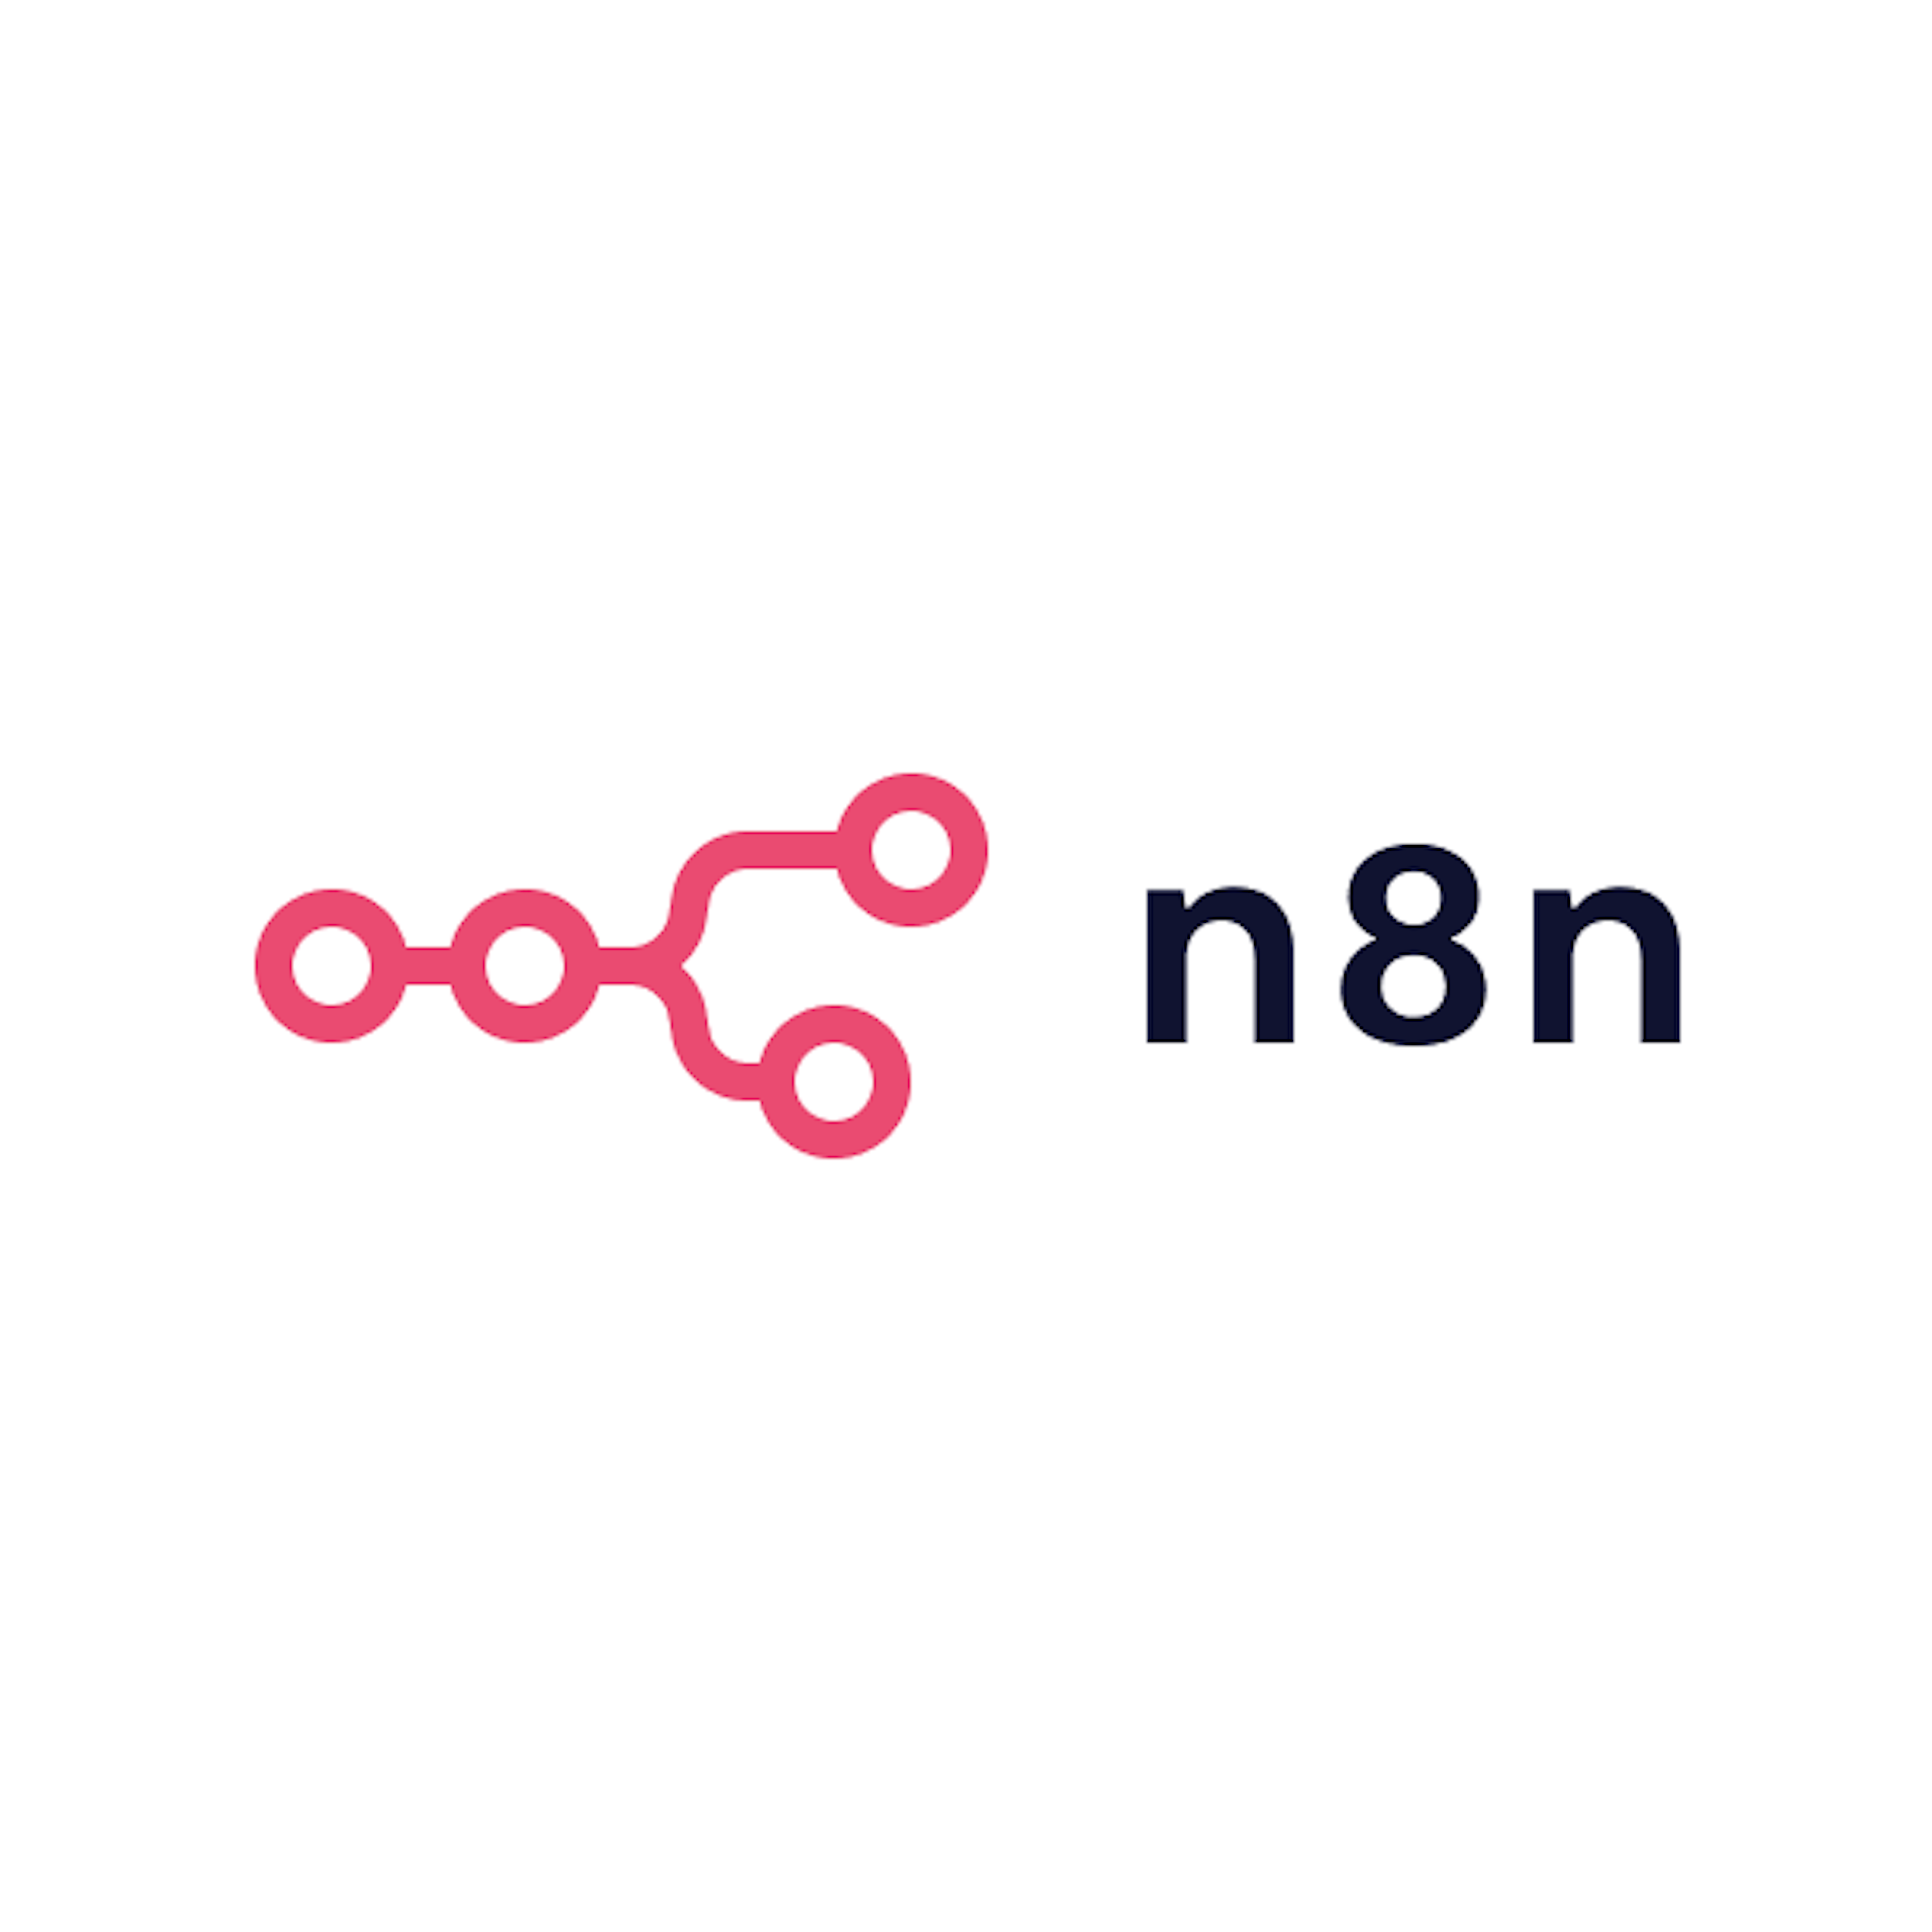 n8n.io Logo